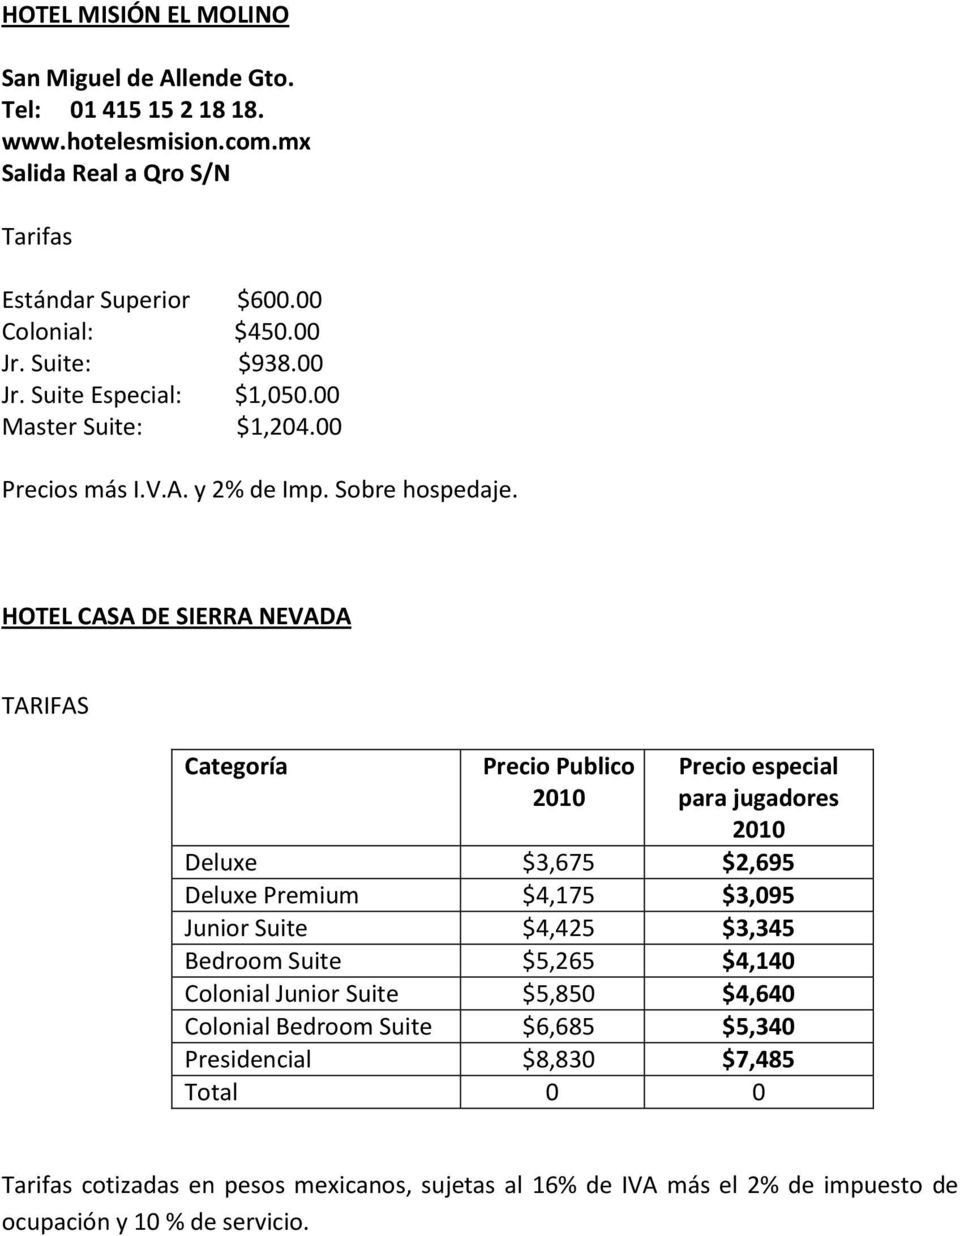 HOTEL CASA DE SIERRA NEVADA TARIFAS Categoría Precio Publico 2010 Precio especial para jugadores 2010 Deluxe 3,675 2,695 Deluxe Premium 4,175 3,095 Junior Suite 4,425 3,345